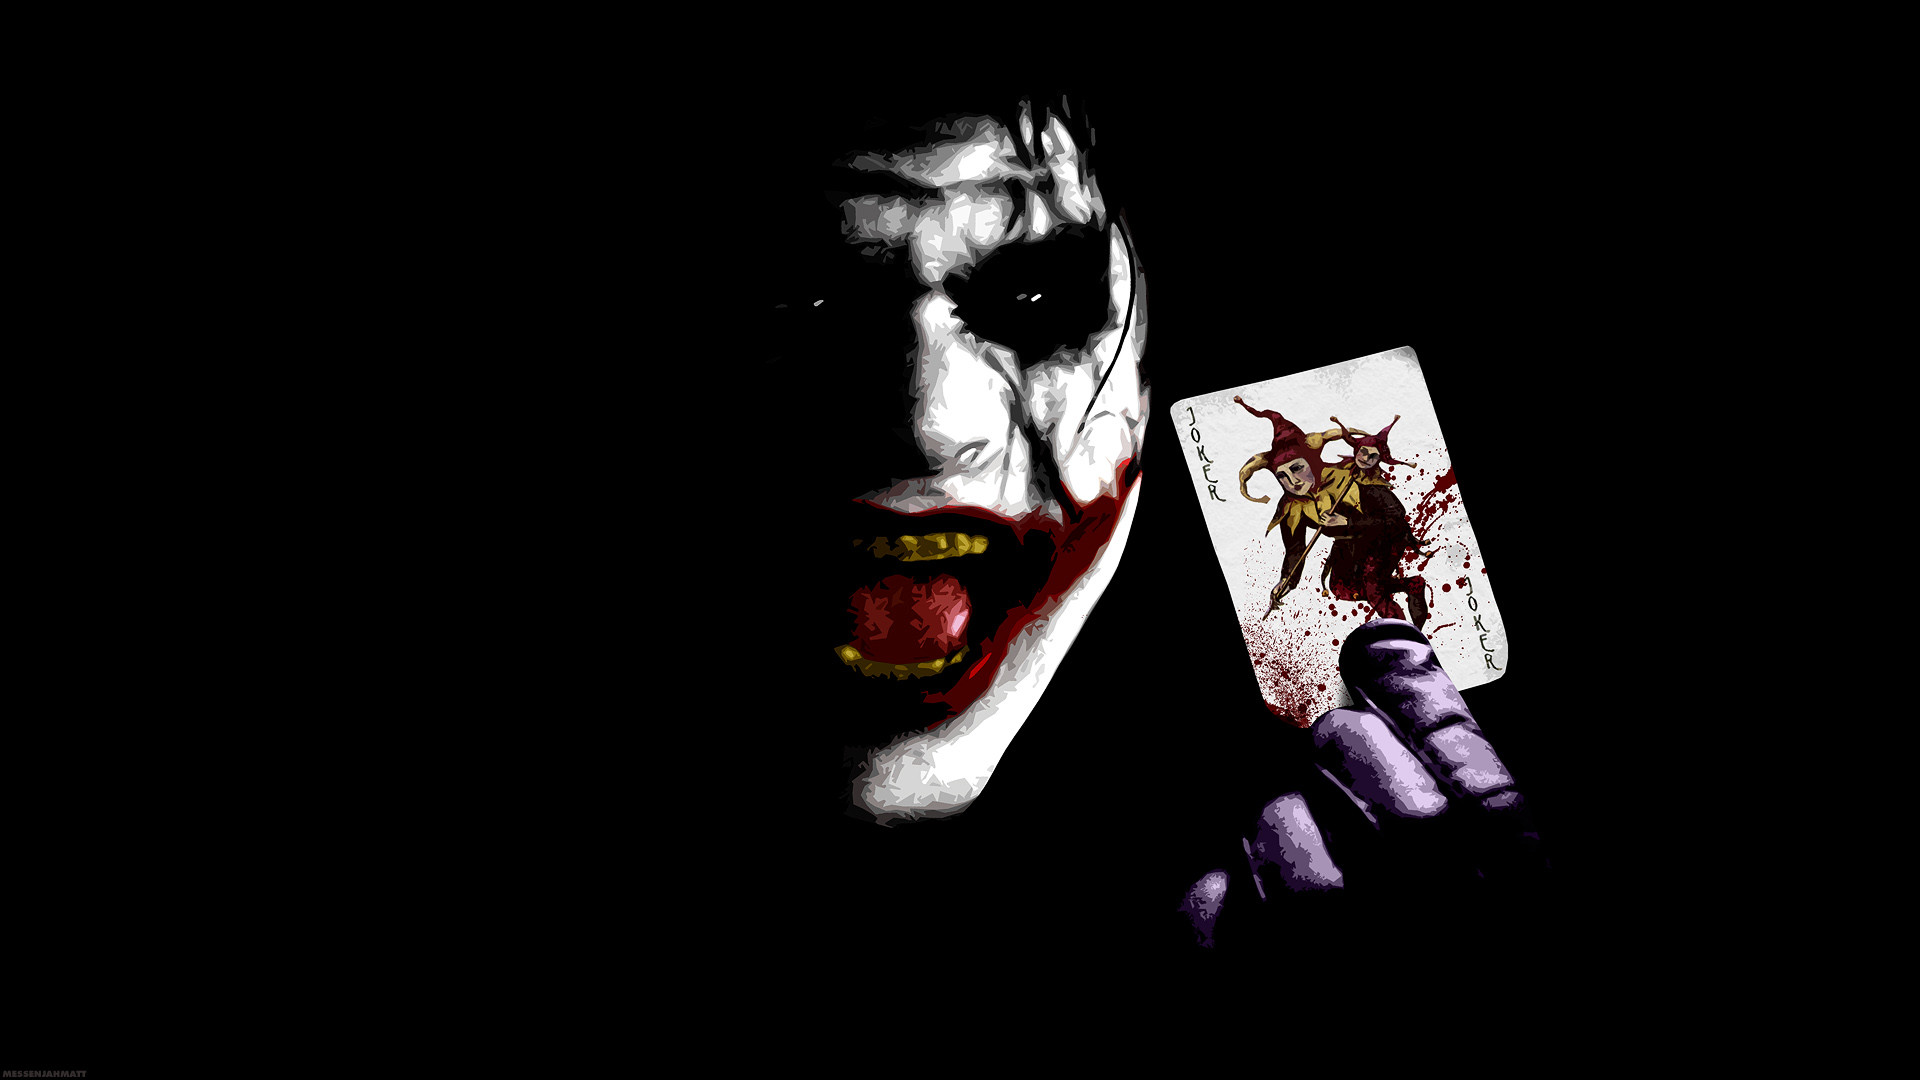 Joker Evil Smile DC 4K Wallpaper #6.2103